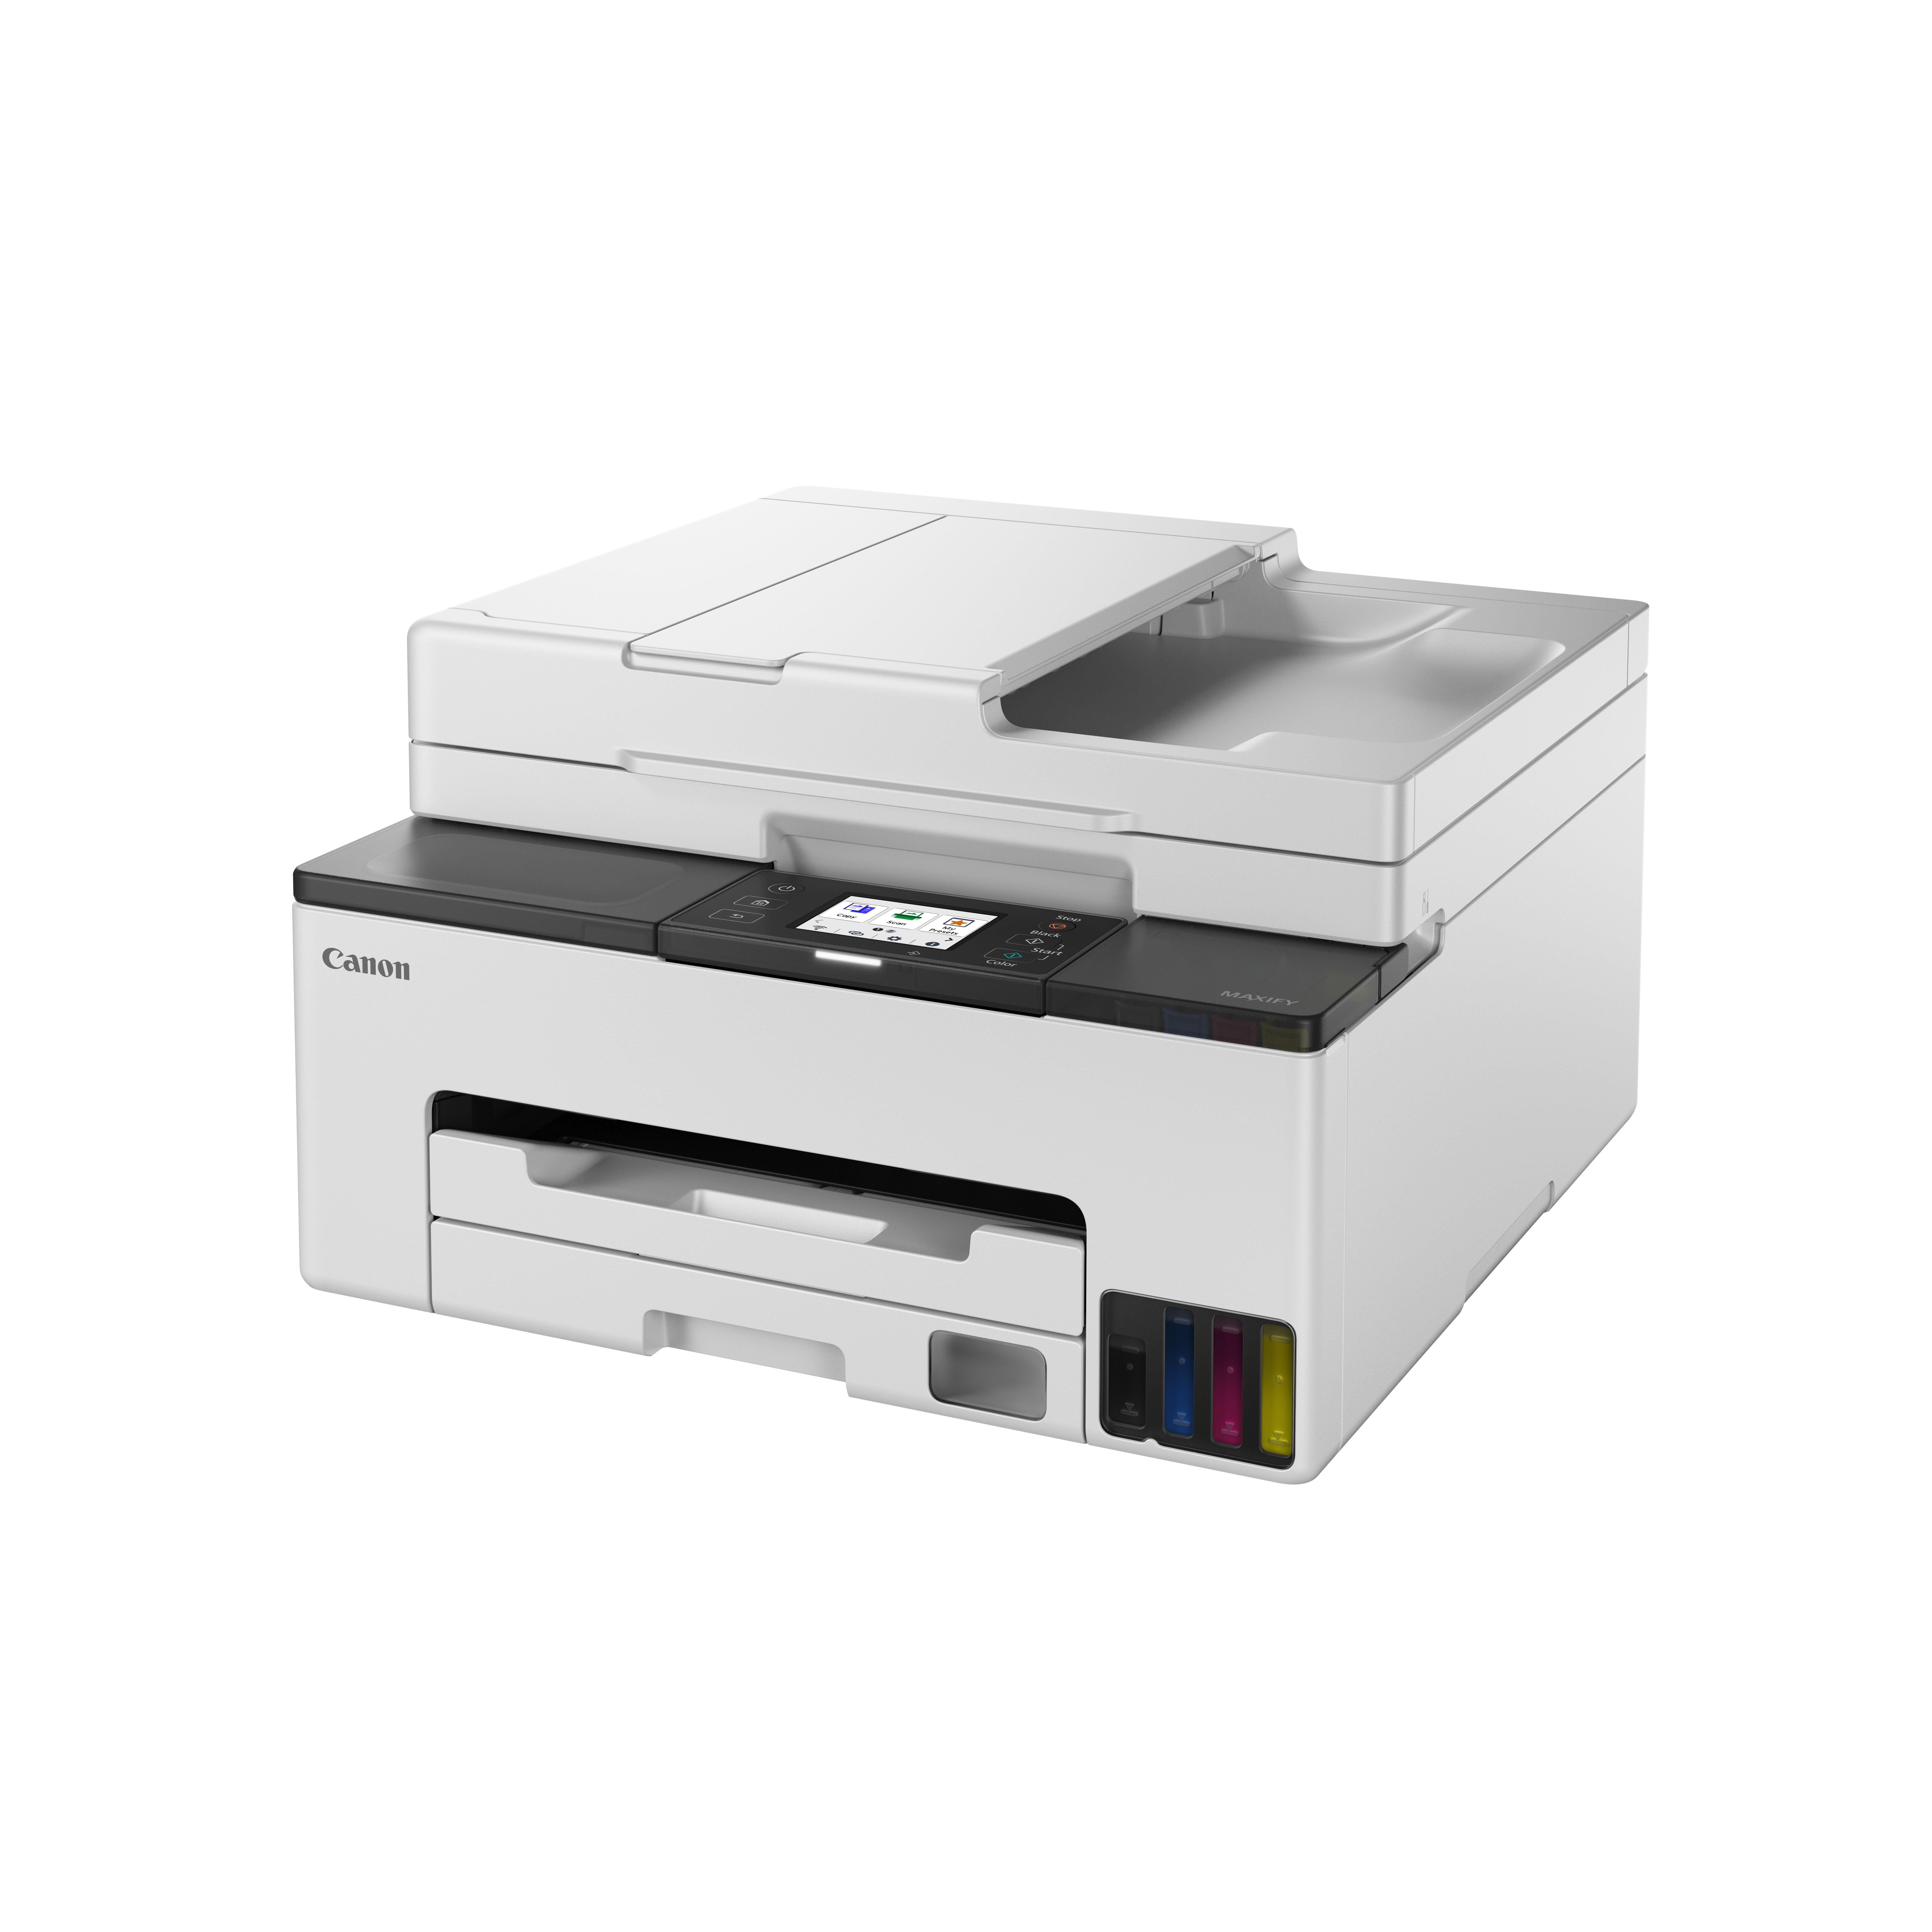 CANON, Stampanti e multifunzione laser e ink-jet, Maxify gx1050, 6169C006 -  Stampanti Multifunzione Inkjet